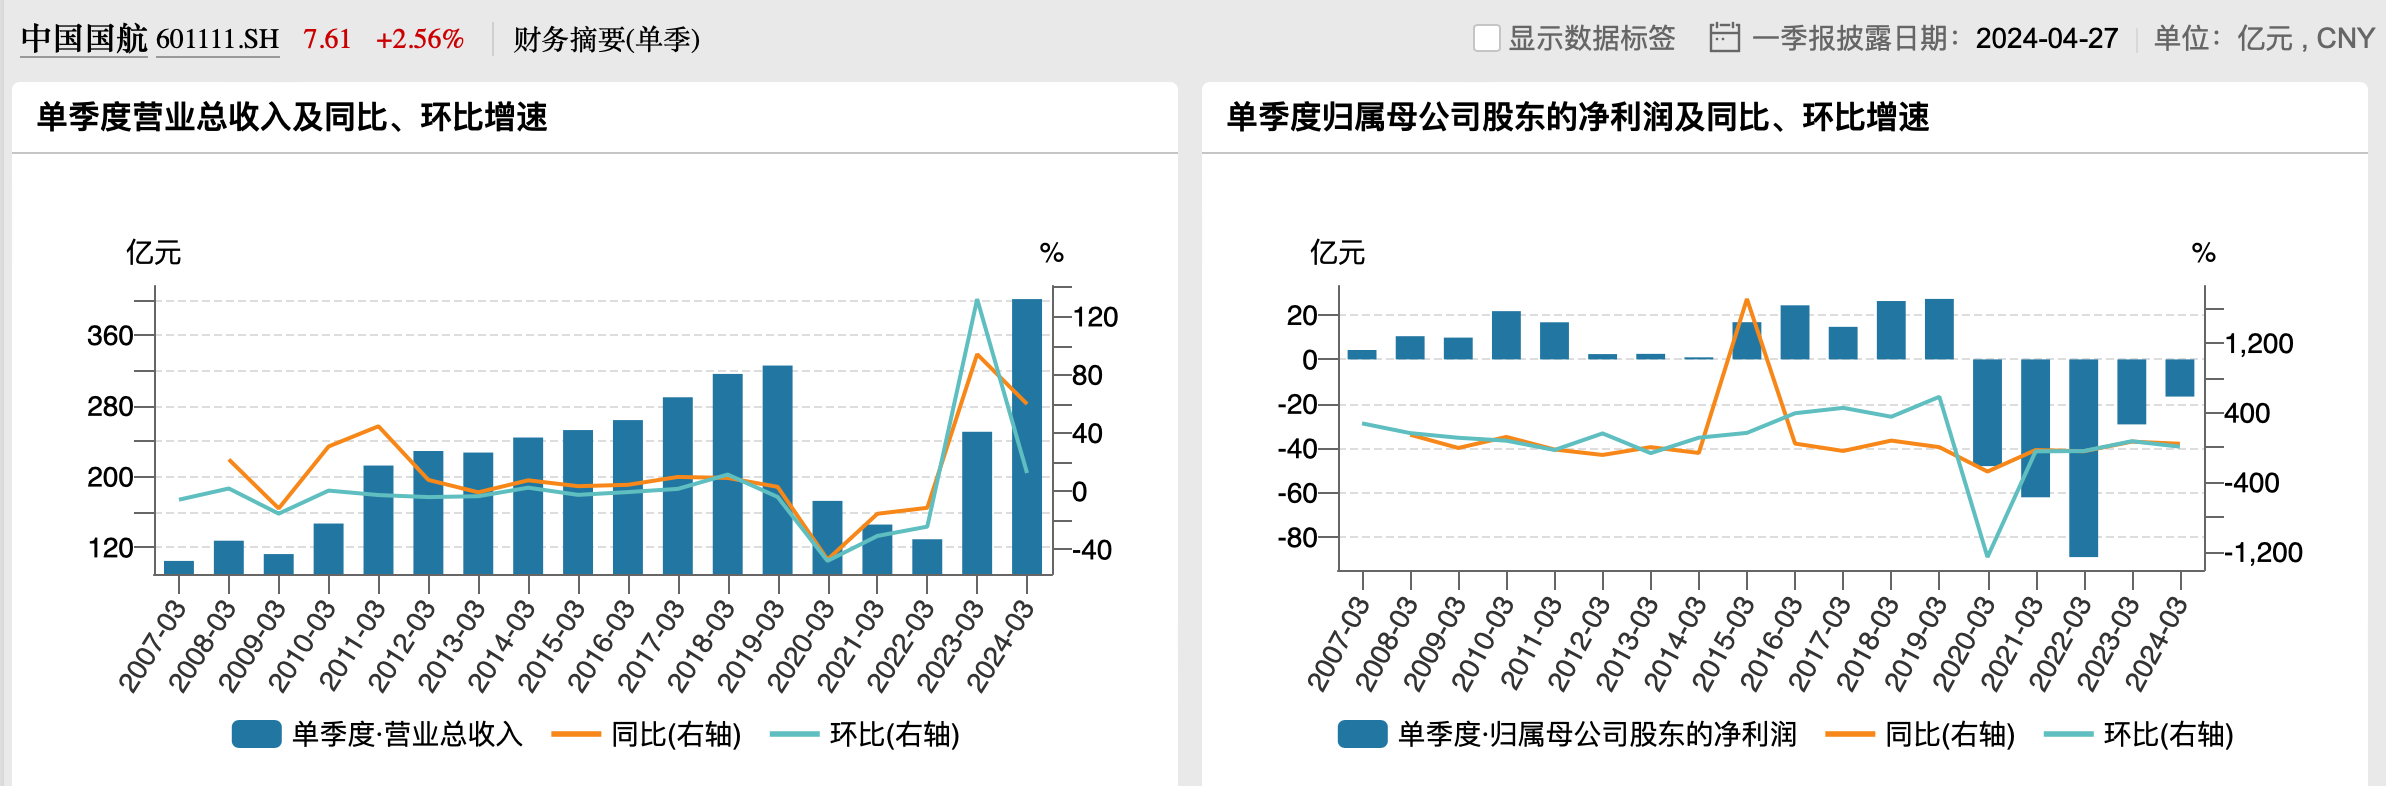 中国国航过往一季度业绩情况，来源于wind